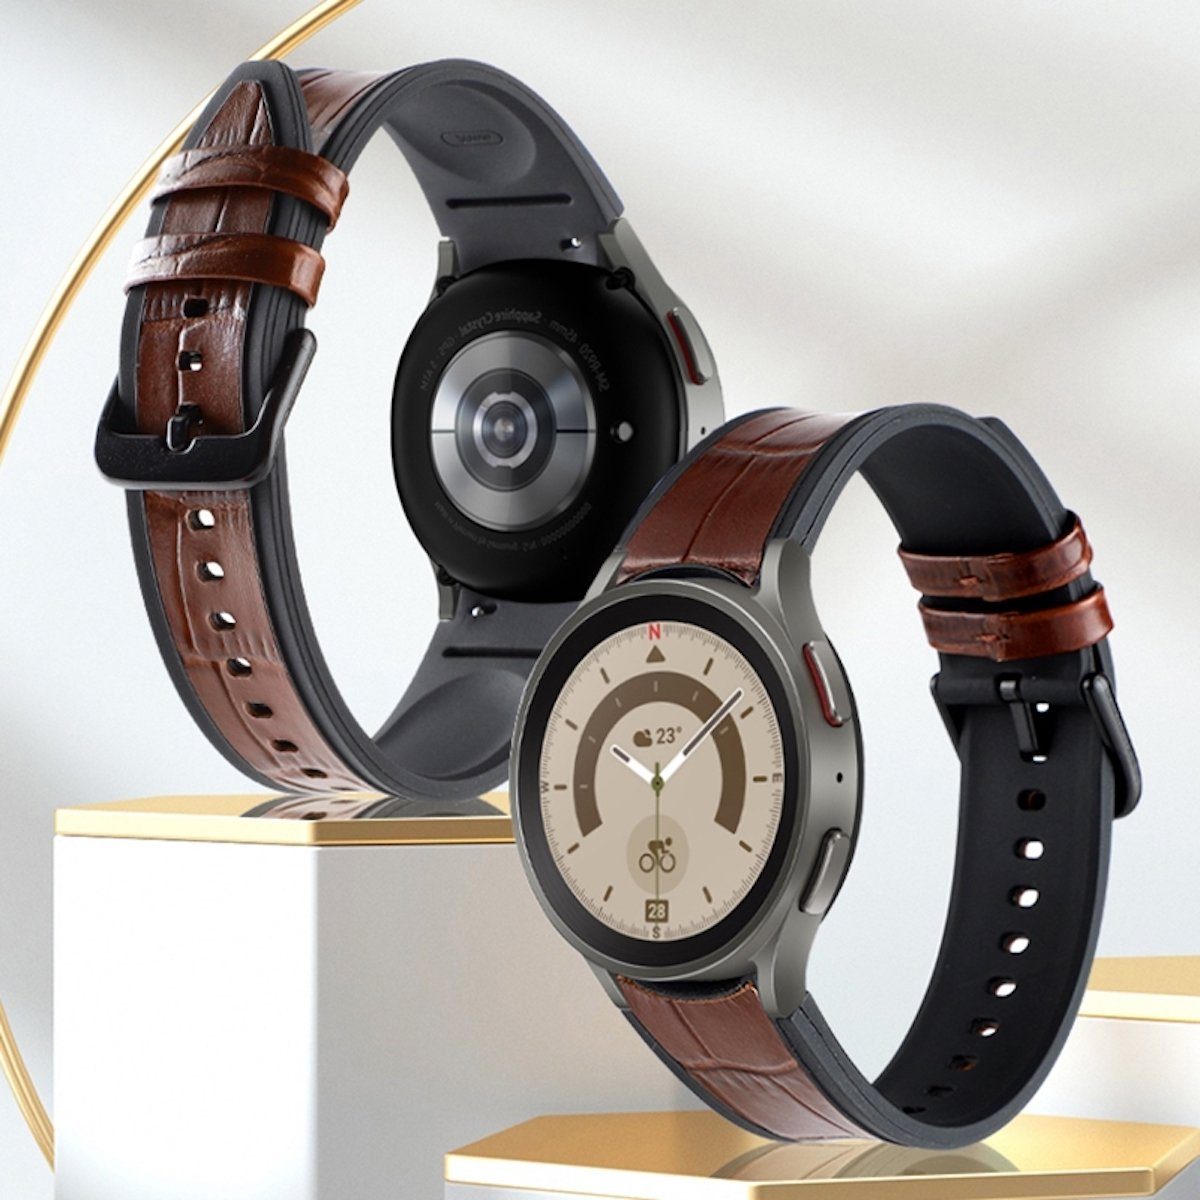 6 Normal Watch 4 Für Armband Wigento Pro 5 Smartwatch-Armband Größen Samsung Galaxy und alle